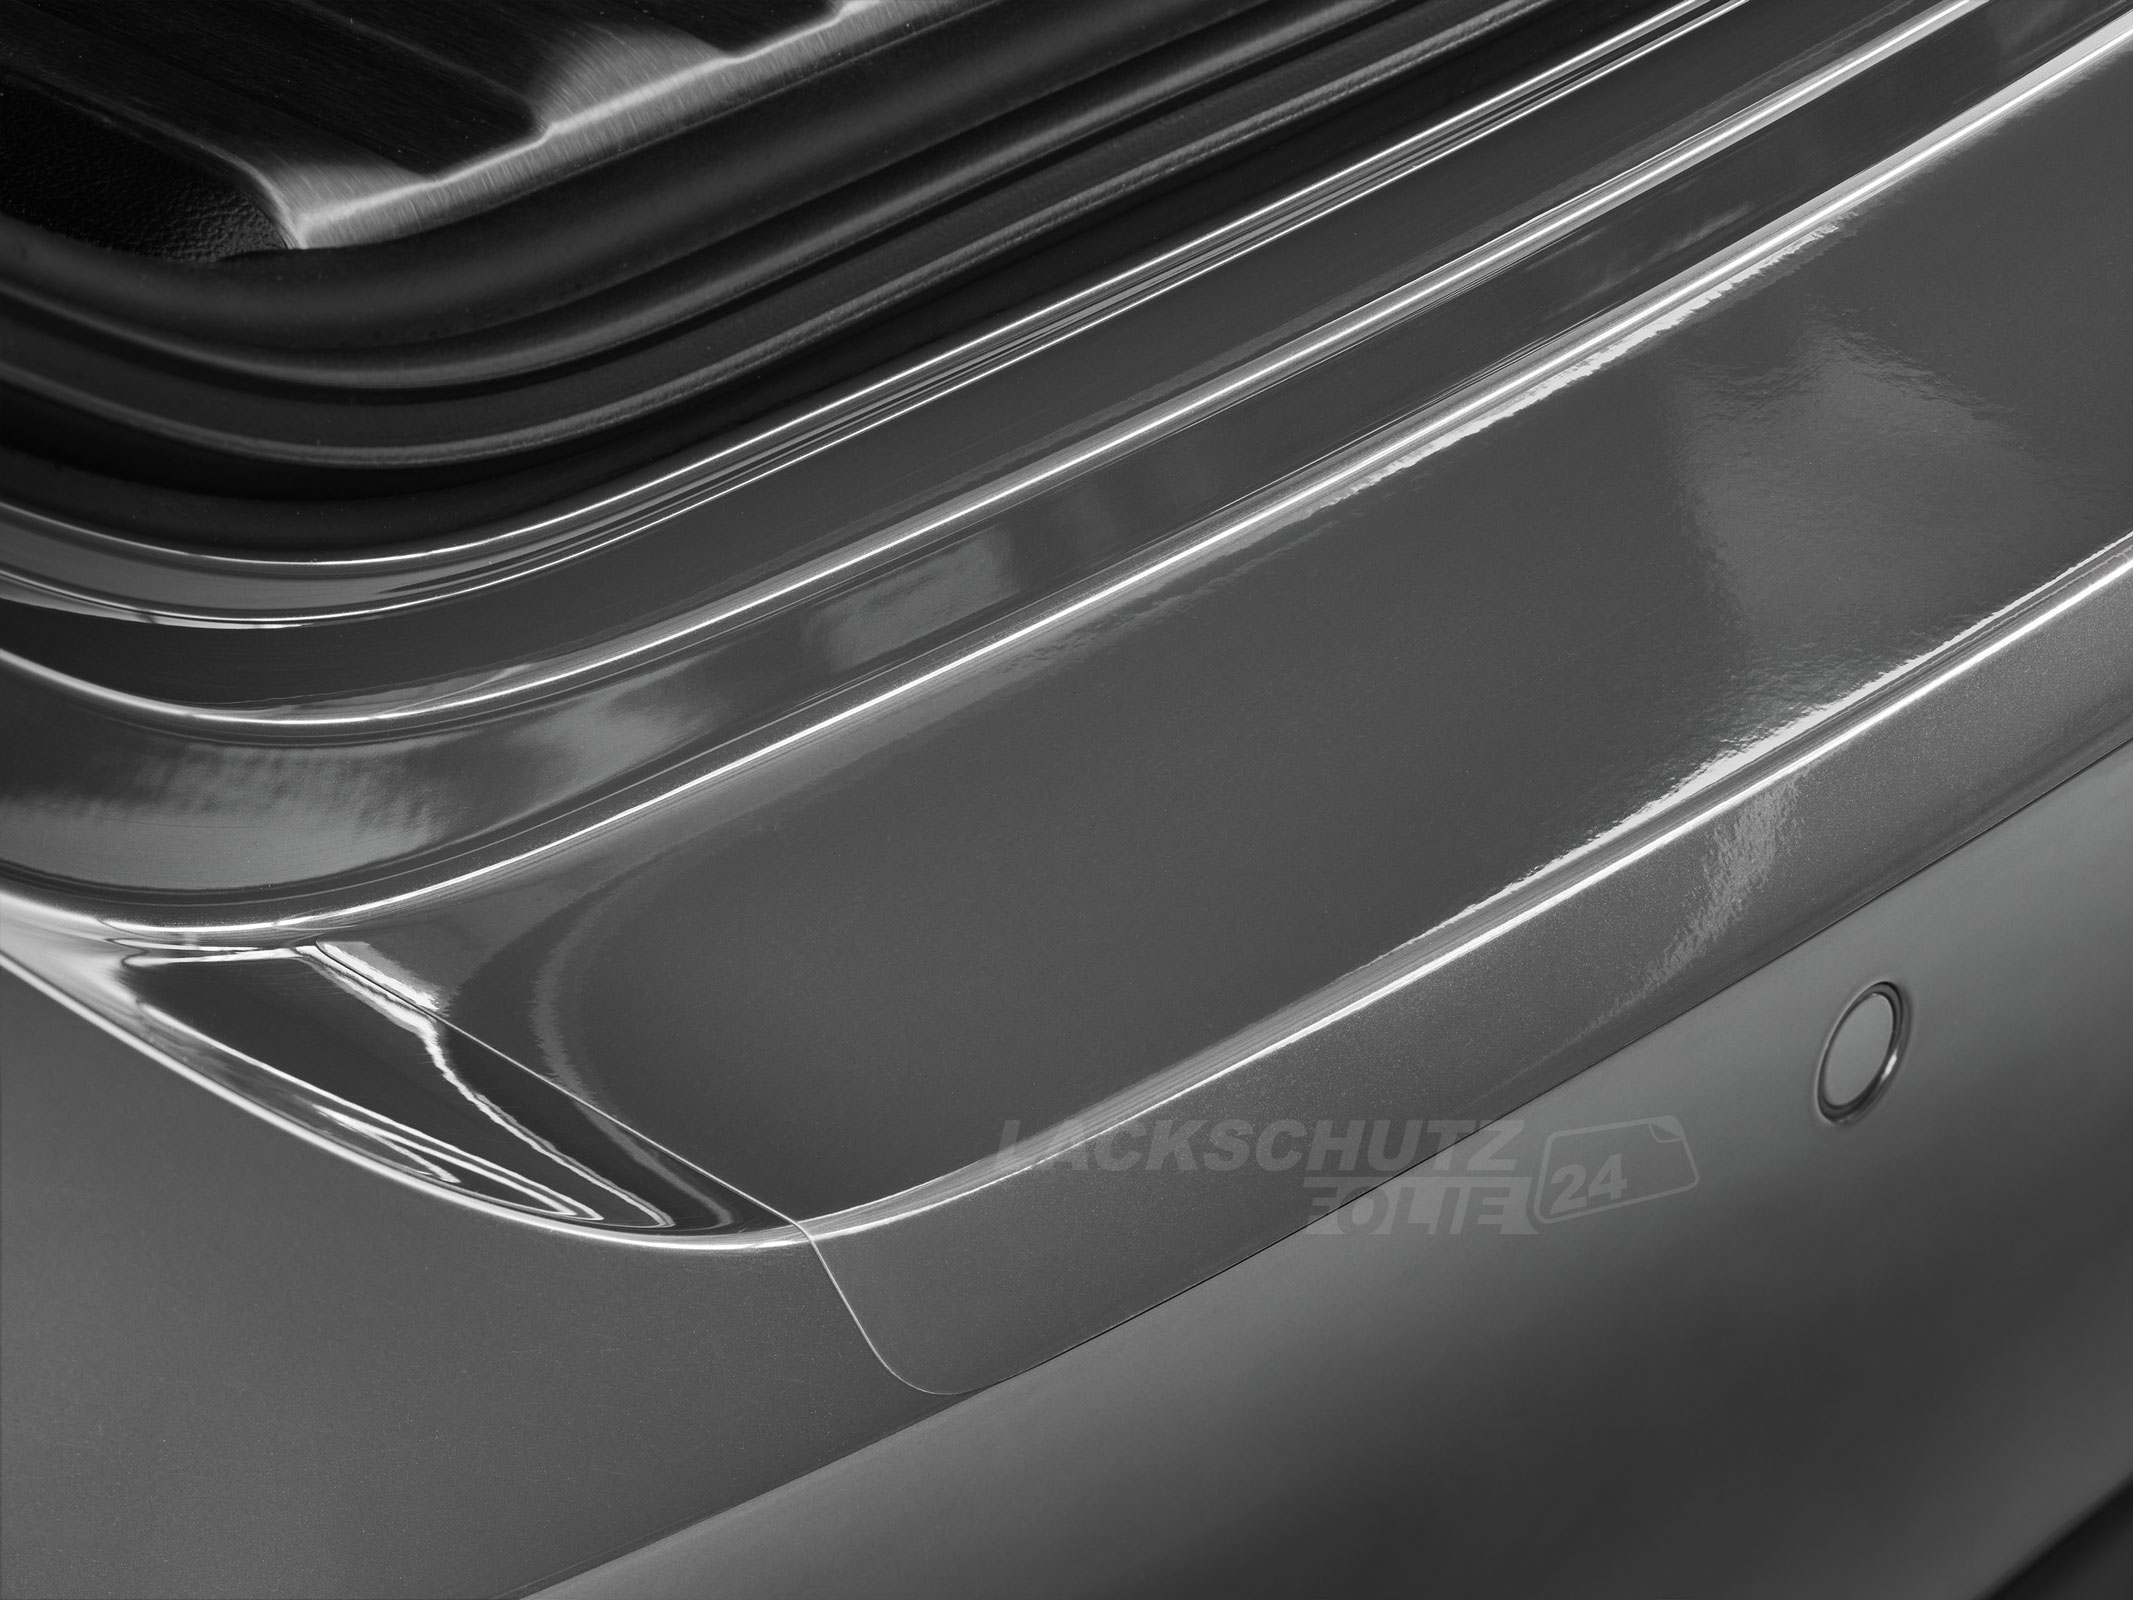 Ladekantenschutzfolie - Transparent Glatt Hochglänzend 240 µm stark für Seat Alhambra (II) Typ 7N, ab BJ 10/2010 + Facelift